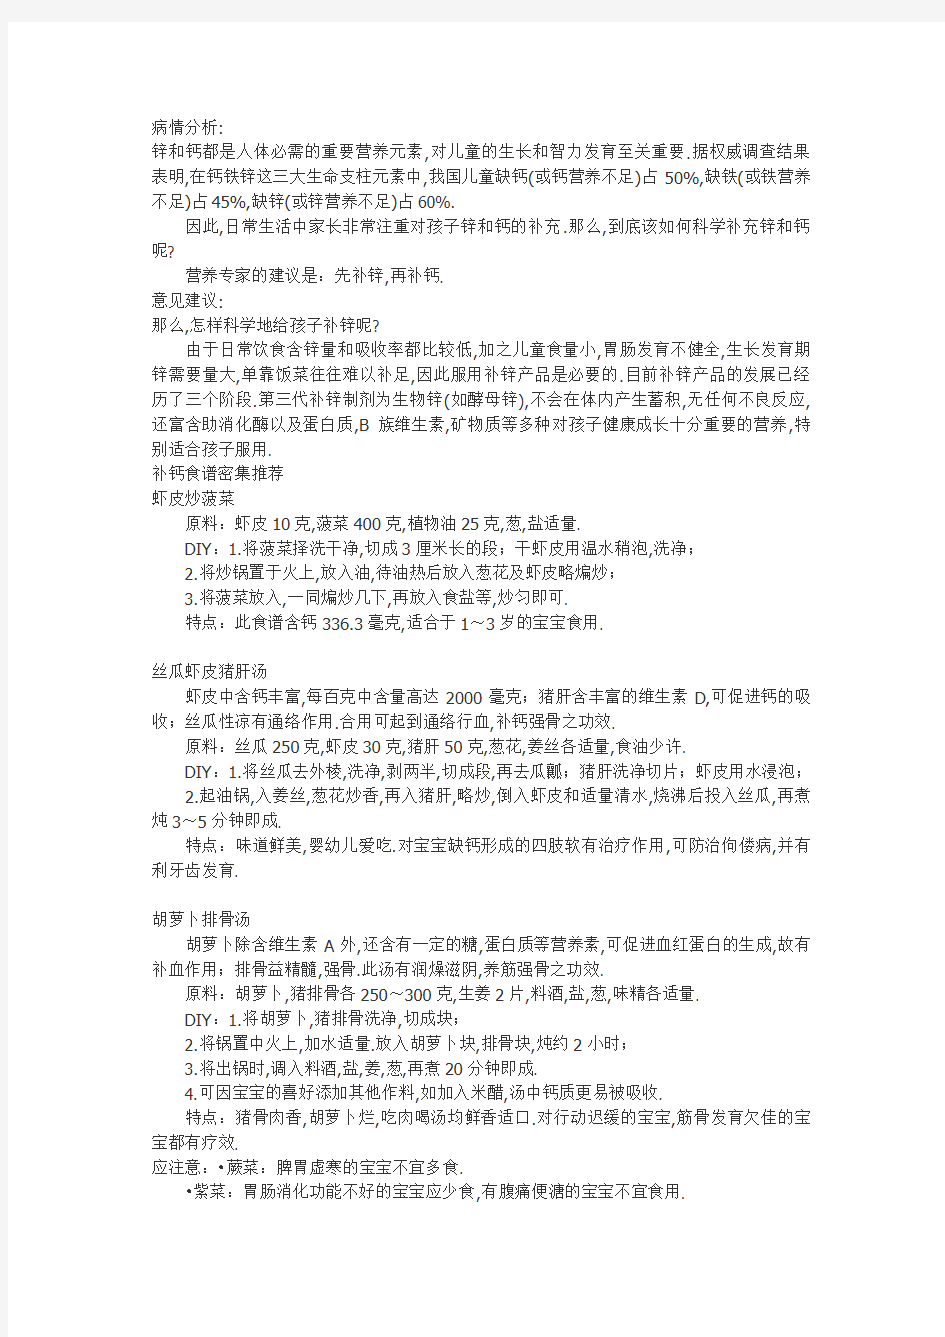 健康小王Microsoft Word 文档 (2)